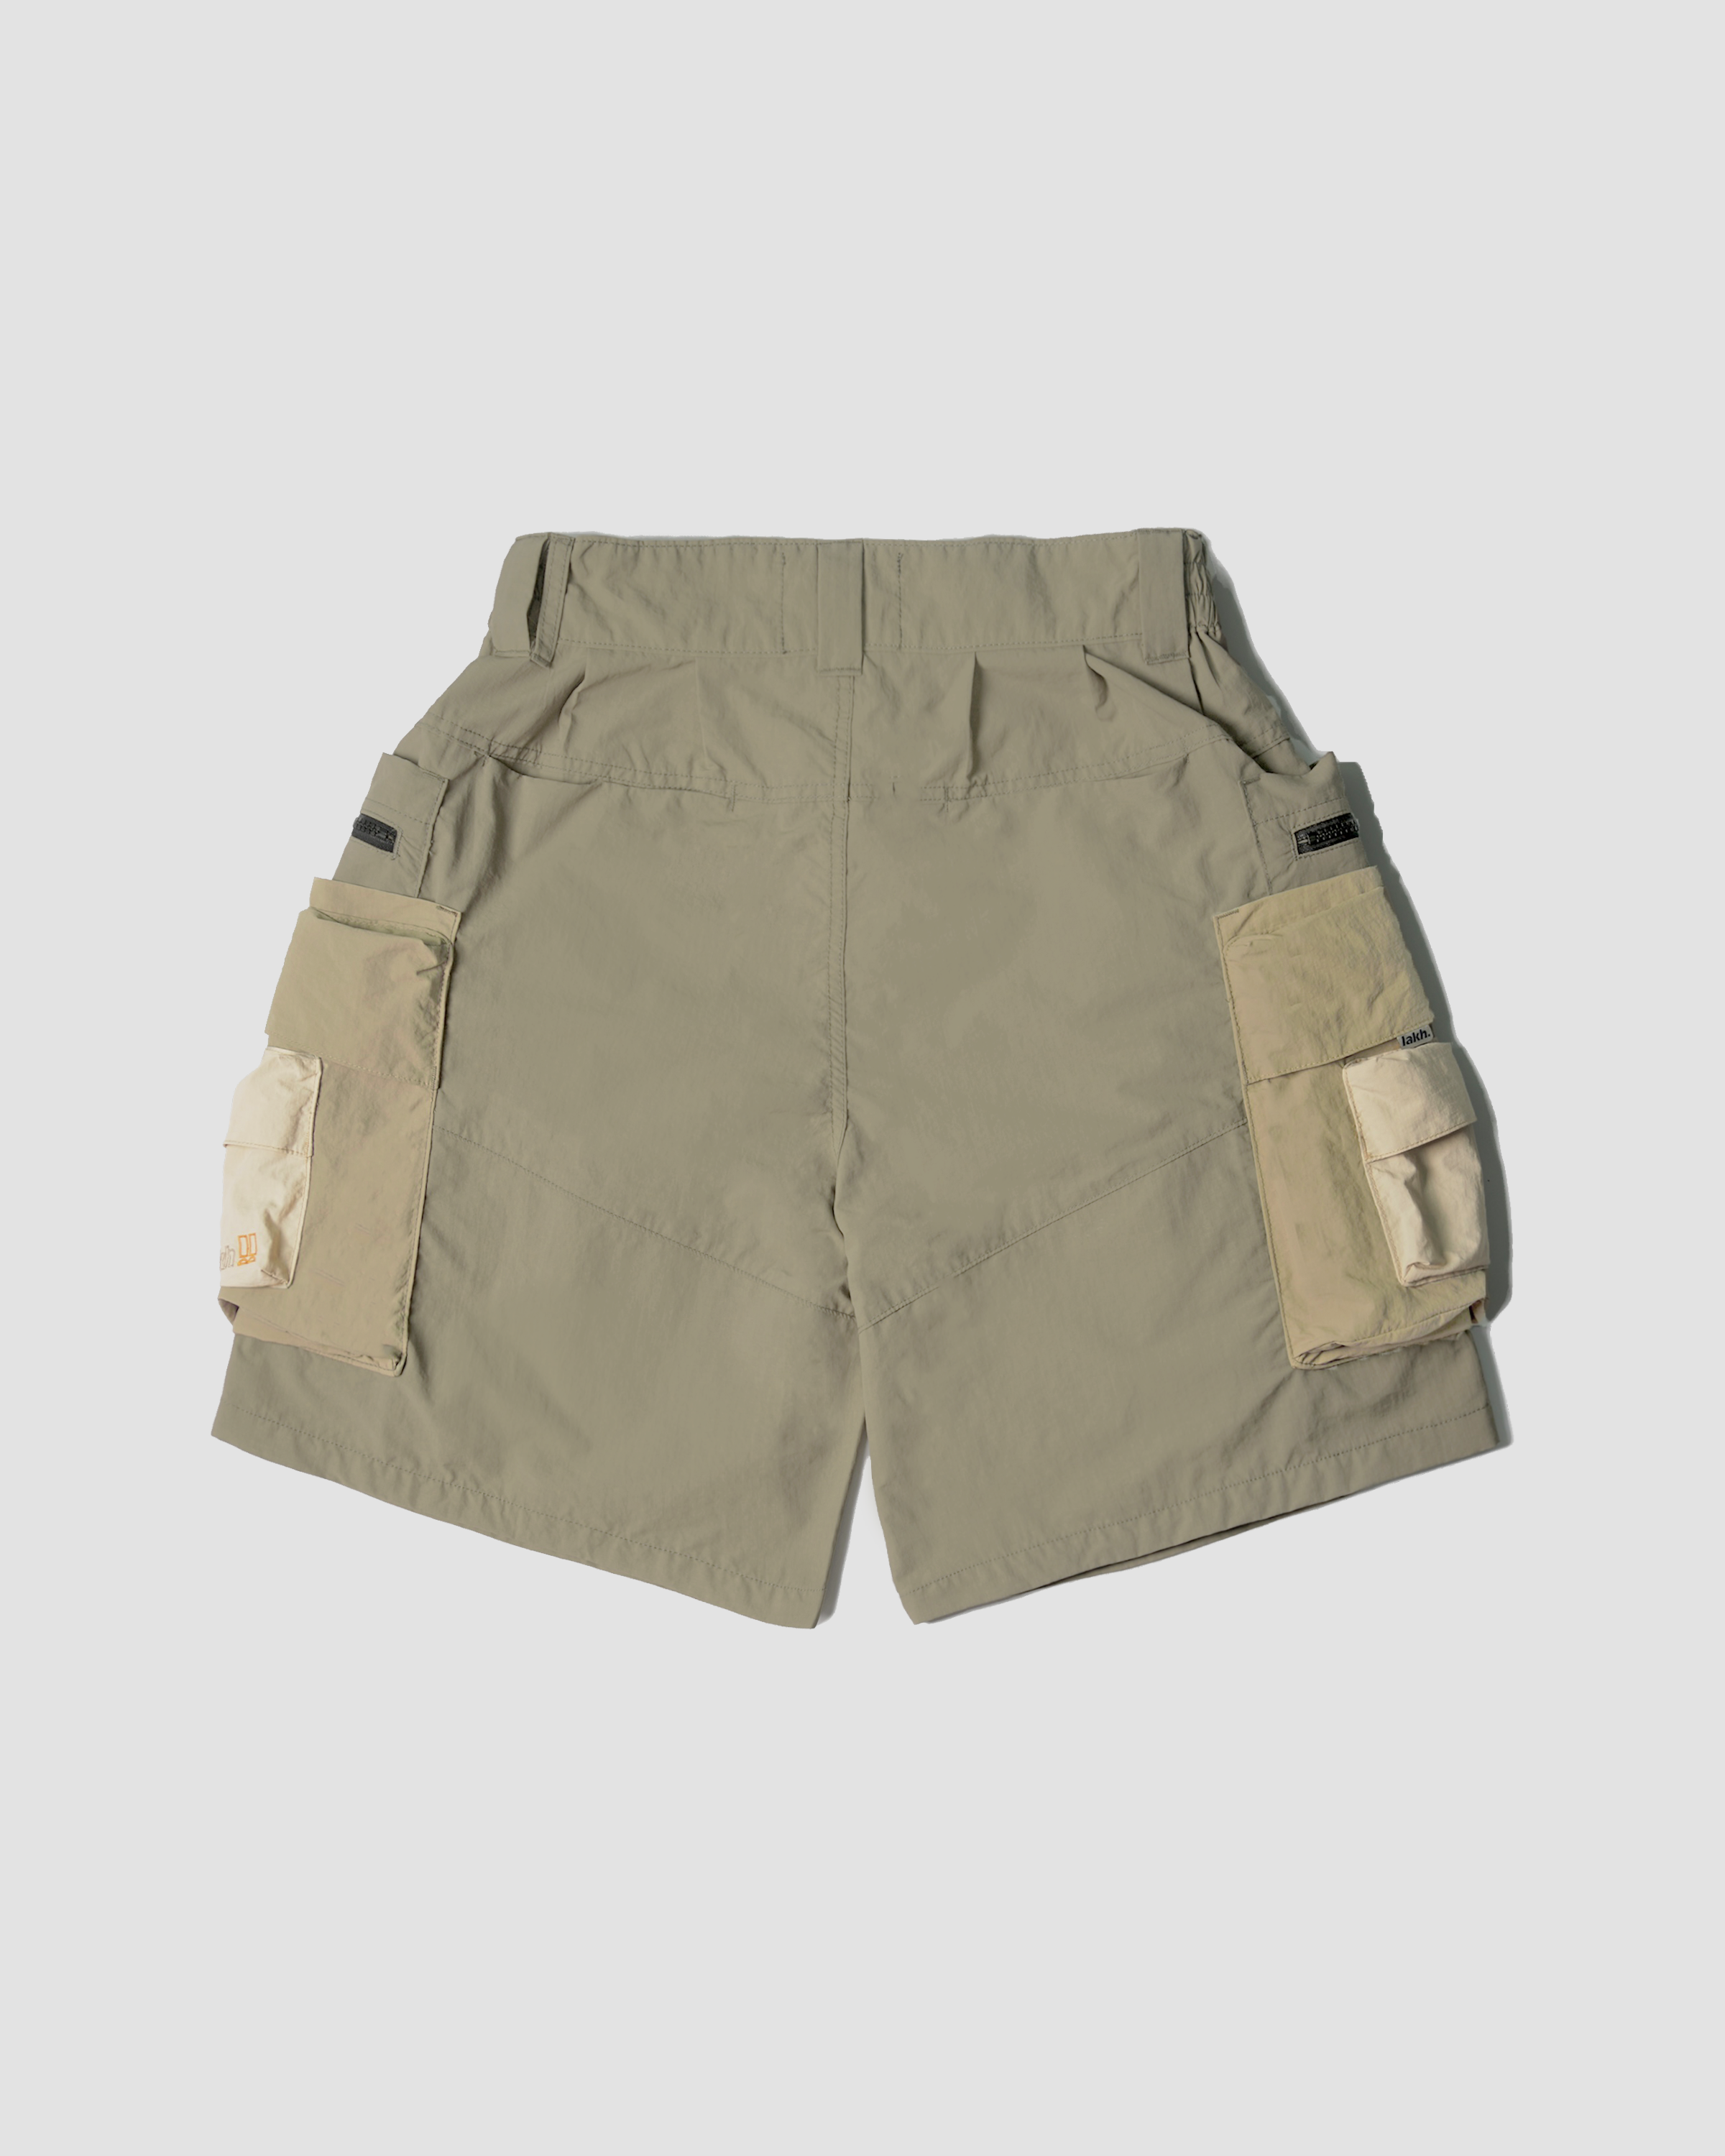 LAKH X HUSKY Patch Pockets Utility Shorts